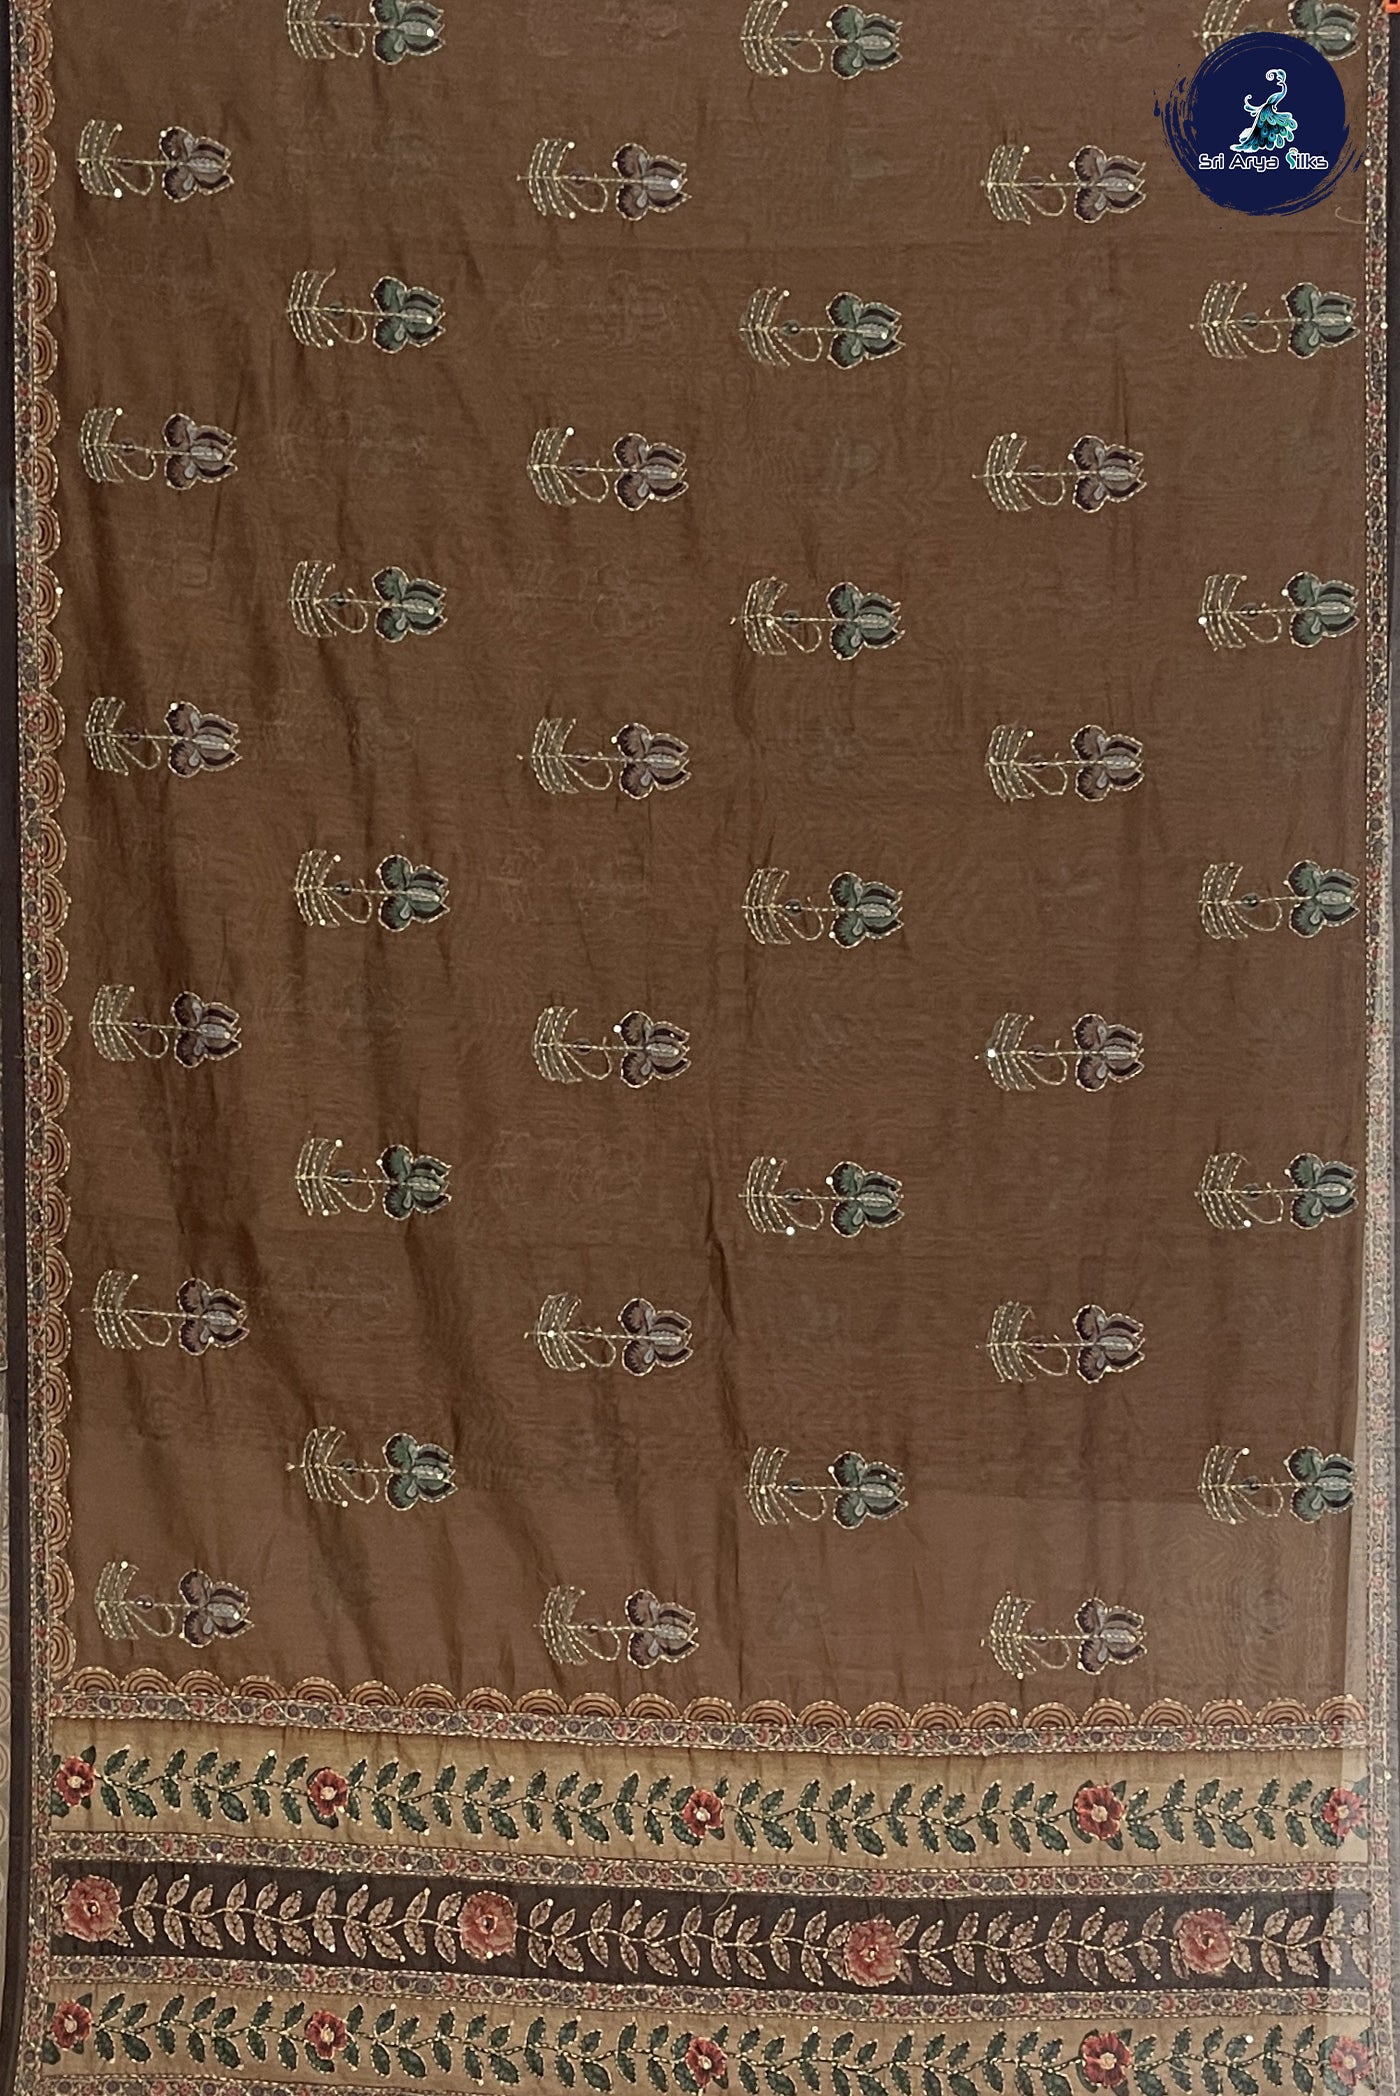 Brown Tussar Saree With Kantha Work Pattern